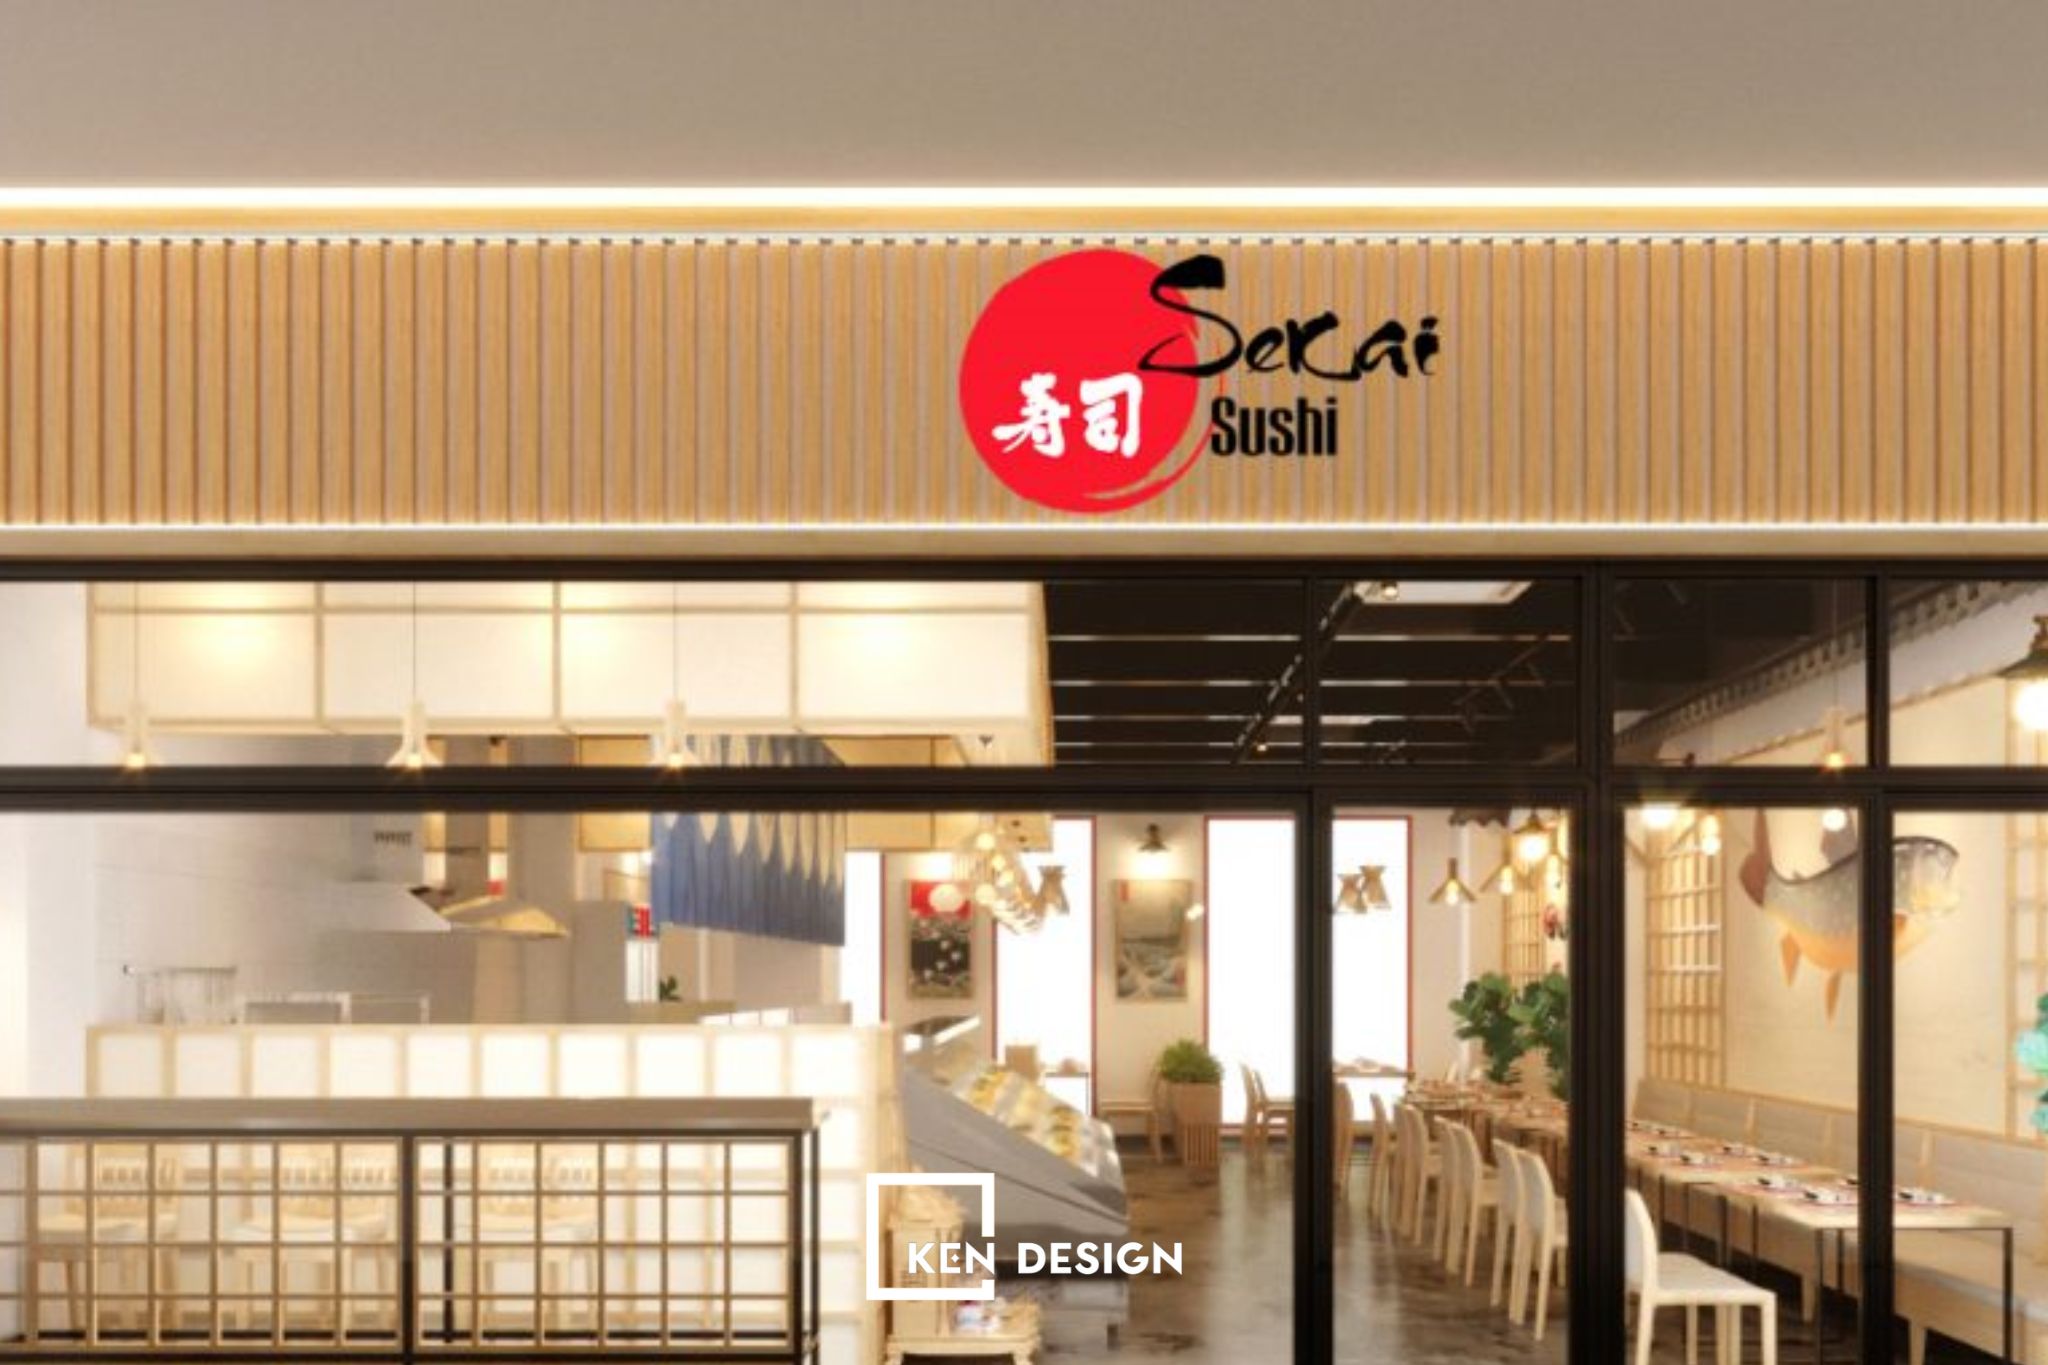 Thiết kế SeKai Sushi - Không gian thiết kế hiện đại và tinh tế